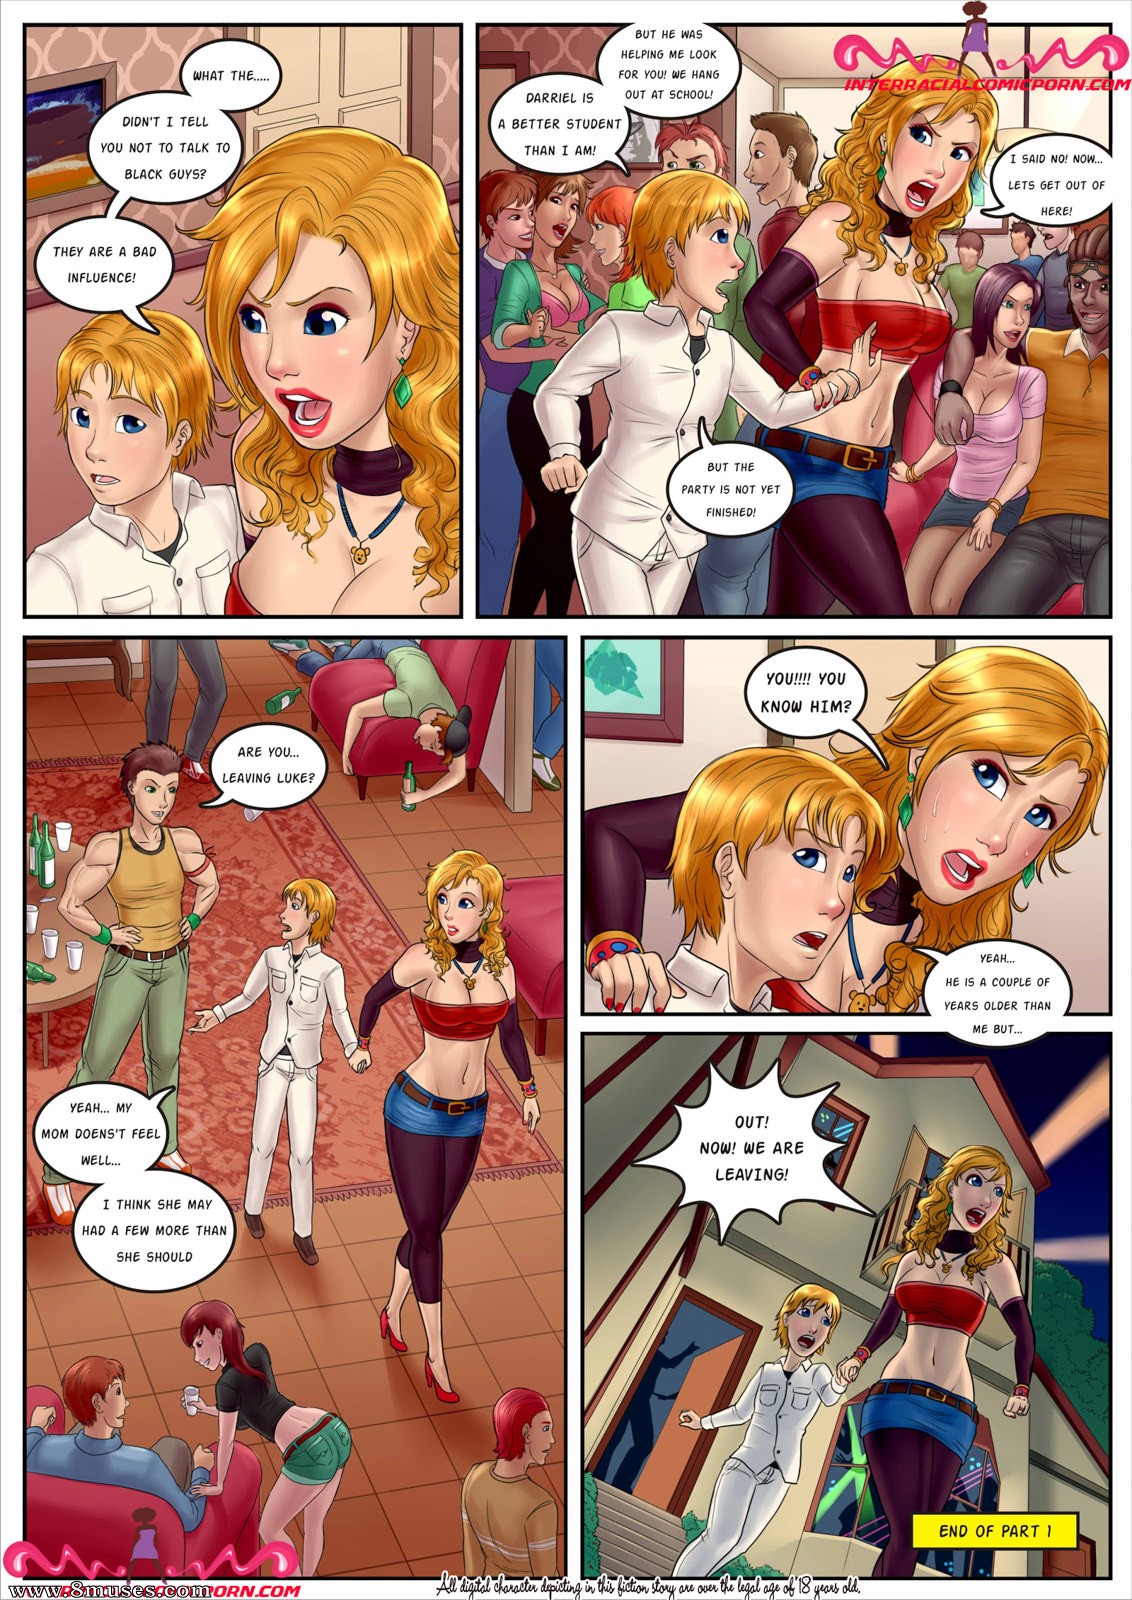 Cartoon Party Porn - Party Slut Issue 1 - 8muses Comics - Sex Comics and Porn Cartoons